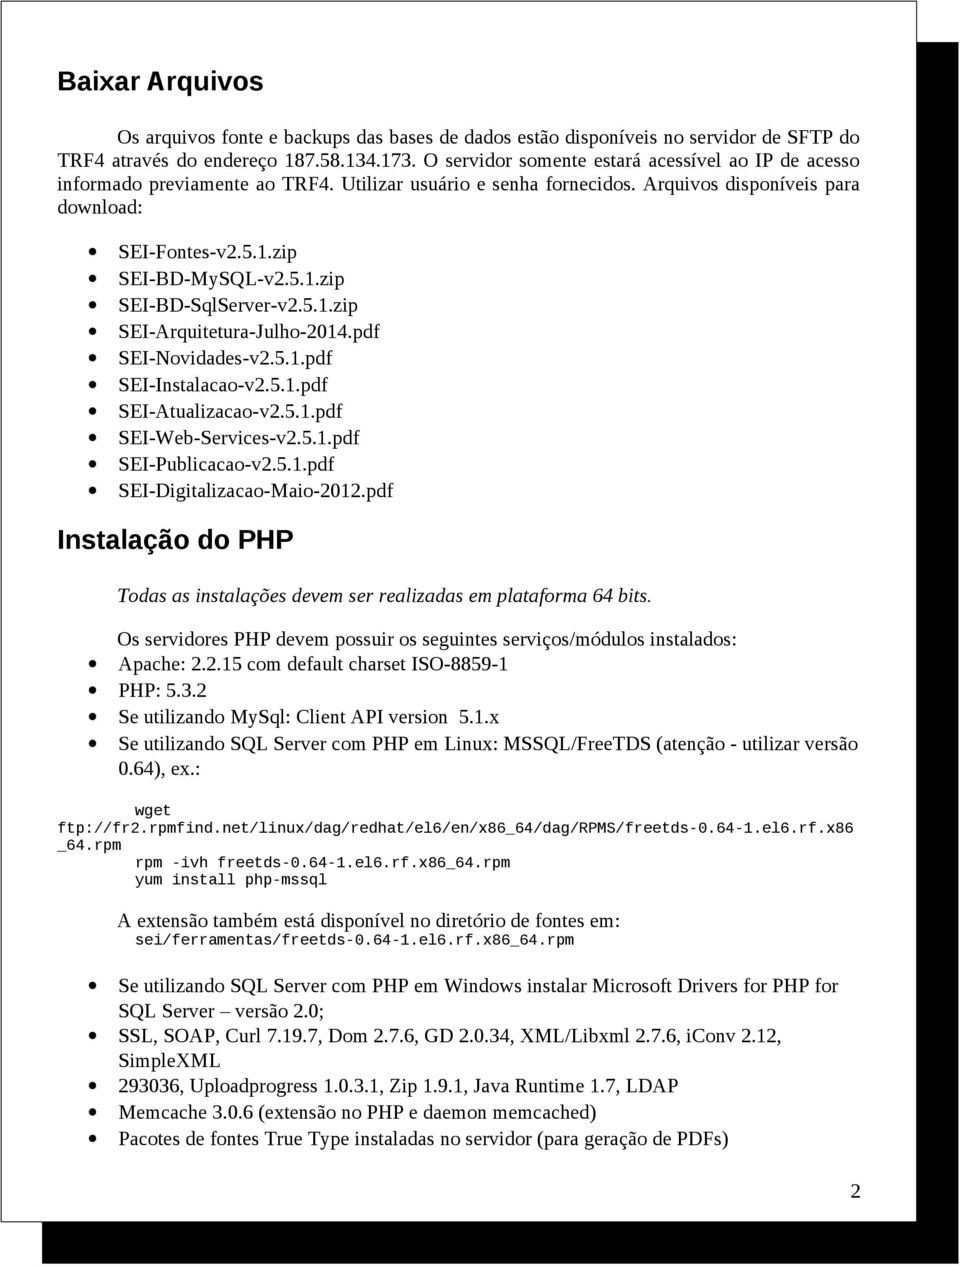 5.1.zip SEI-Arquitetura-Julho-2014.pdf SEI-Novidades-v2.5.1.pdf SEI-Instalacao-v2.5.1.pdf SEI-Atualizacao-v2.5.1.pdf SEI-Web-Services-v2.5.1.pdf SEI-Publicacao-v2.5.1.pdf SEI-Digitalizacao-Maio-2012.